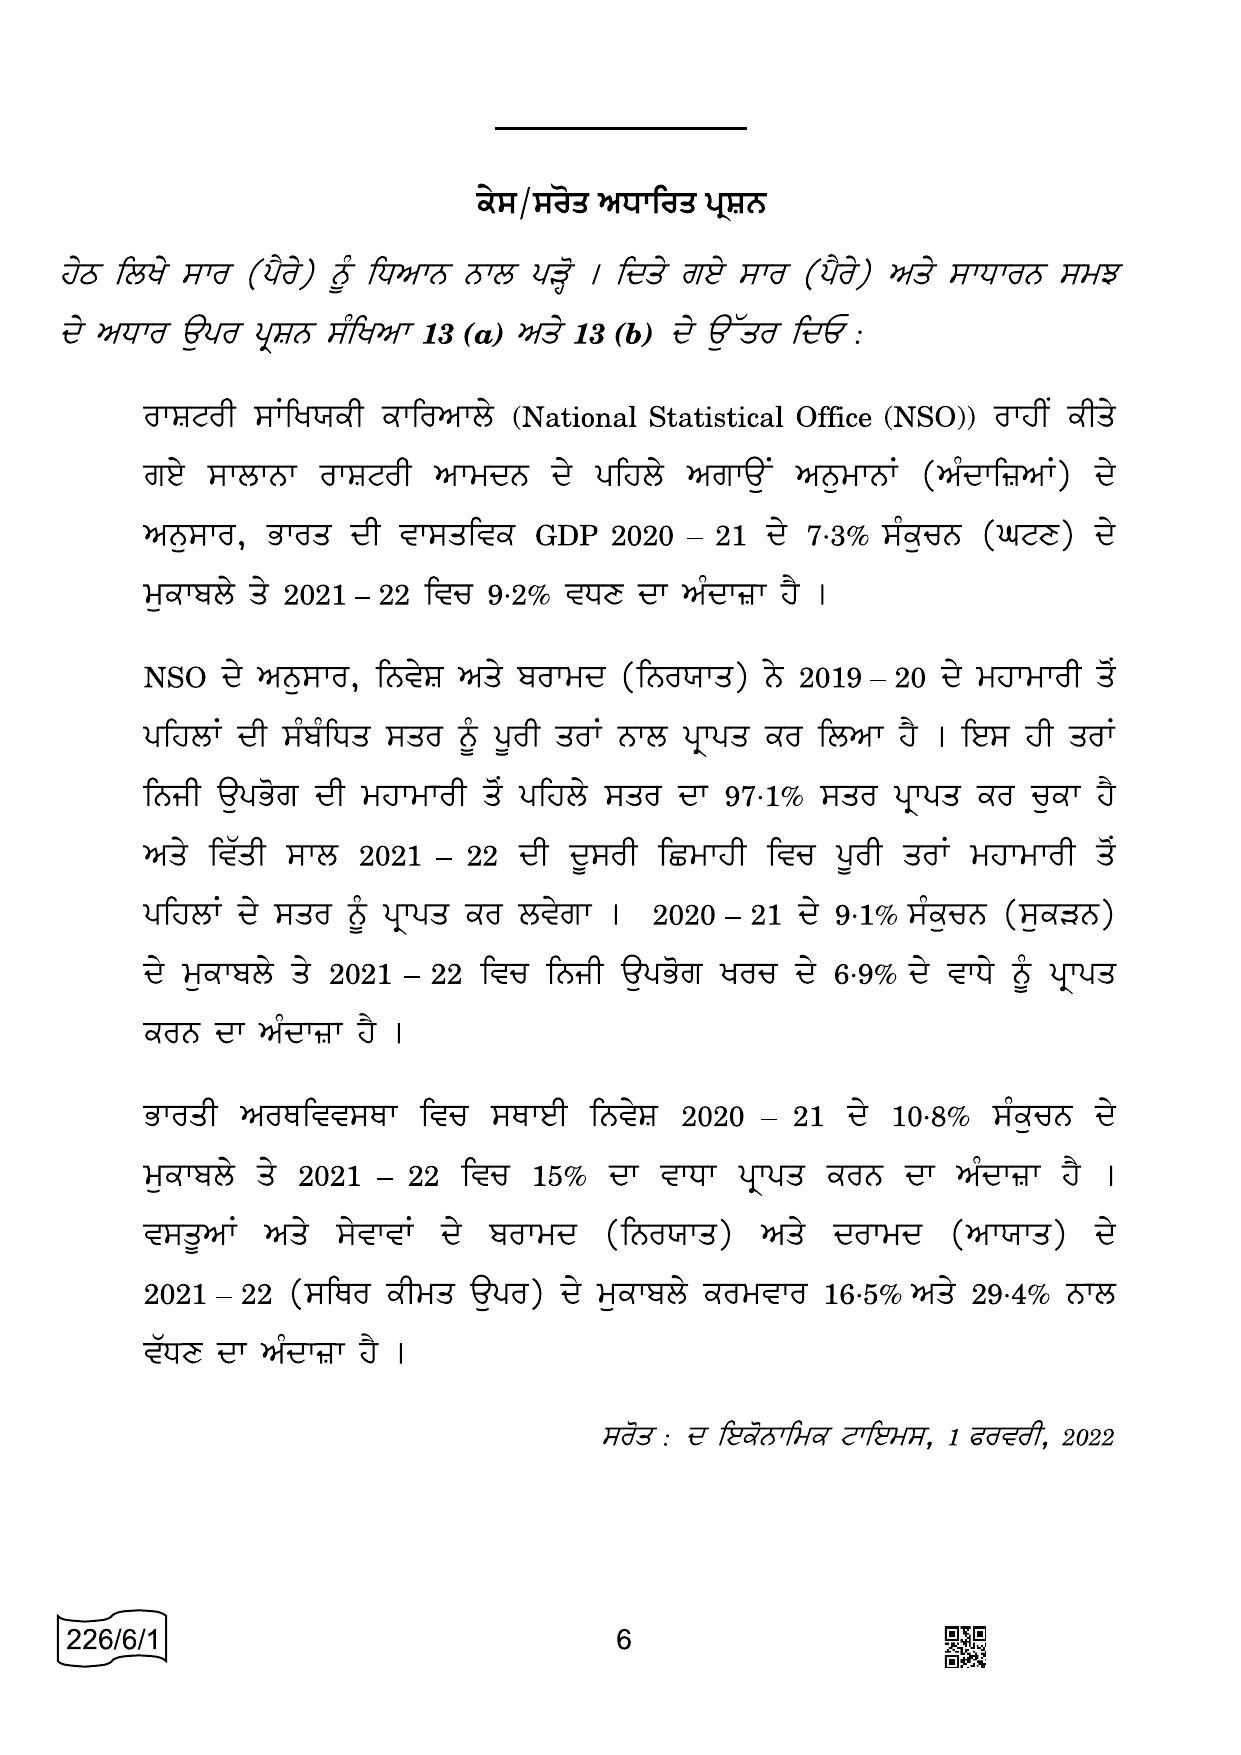 CBSE Class 12 226-6-1 Economics Punjabi 2022 Compartment Question Paper - Page 6